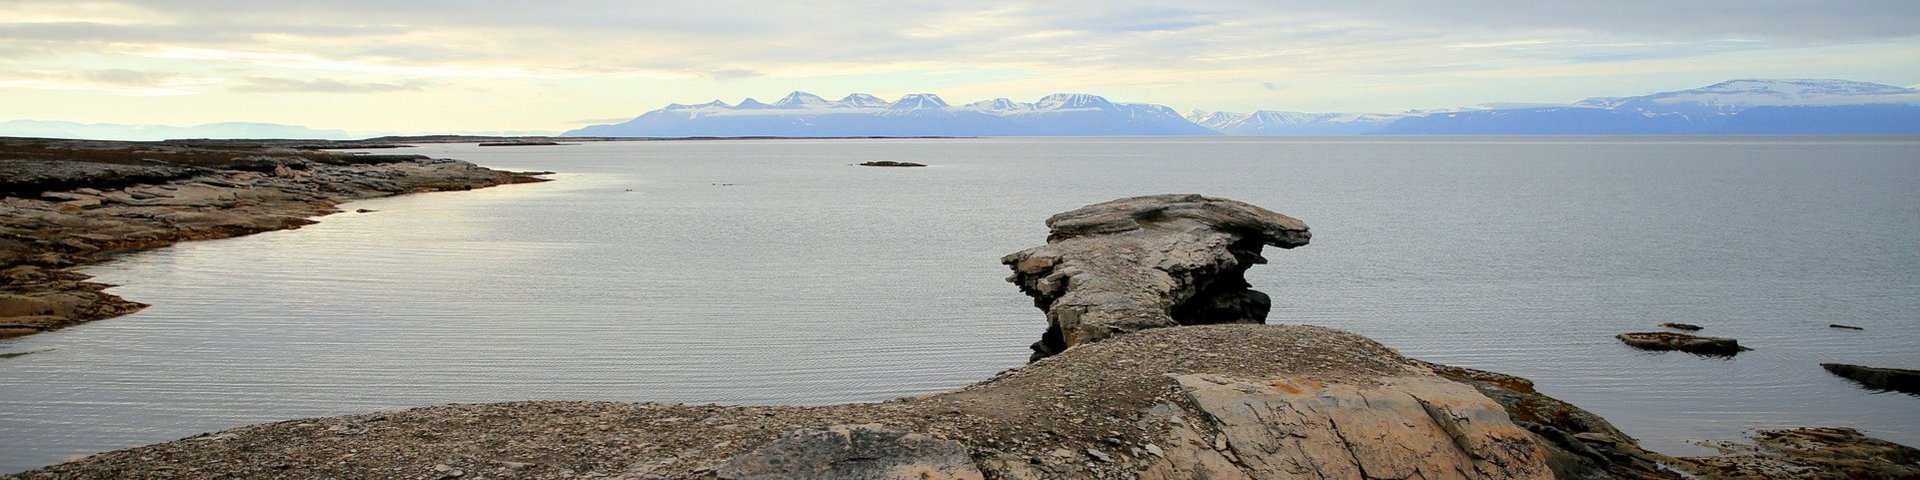 Landschaft mit Strand und Bucht in Spitzbergen